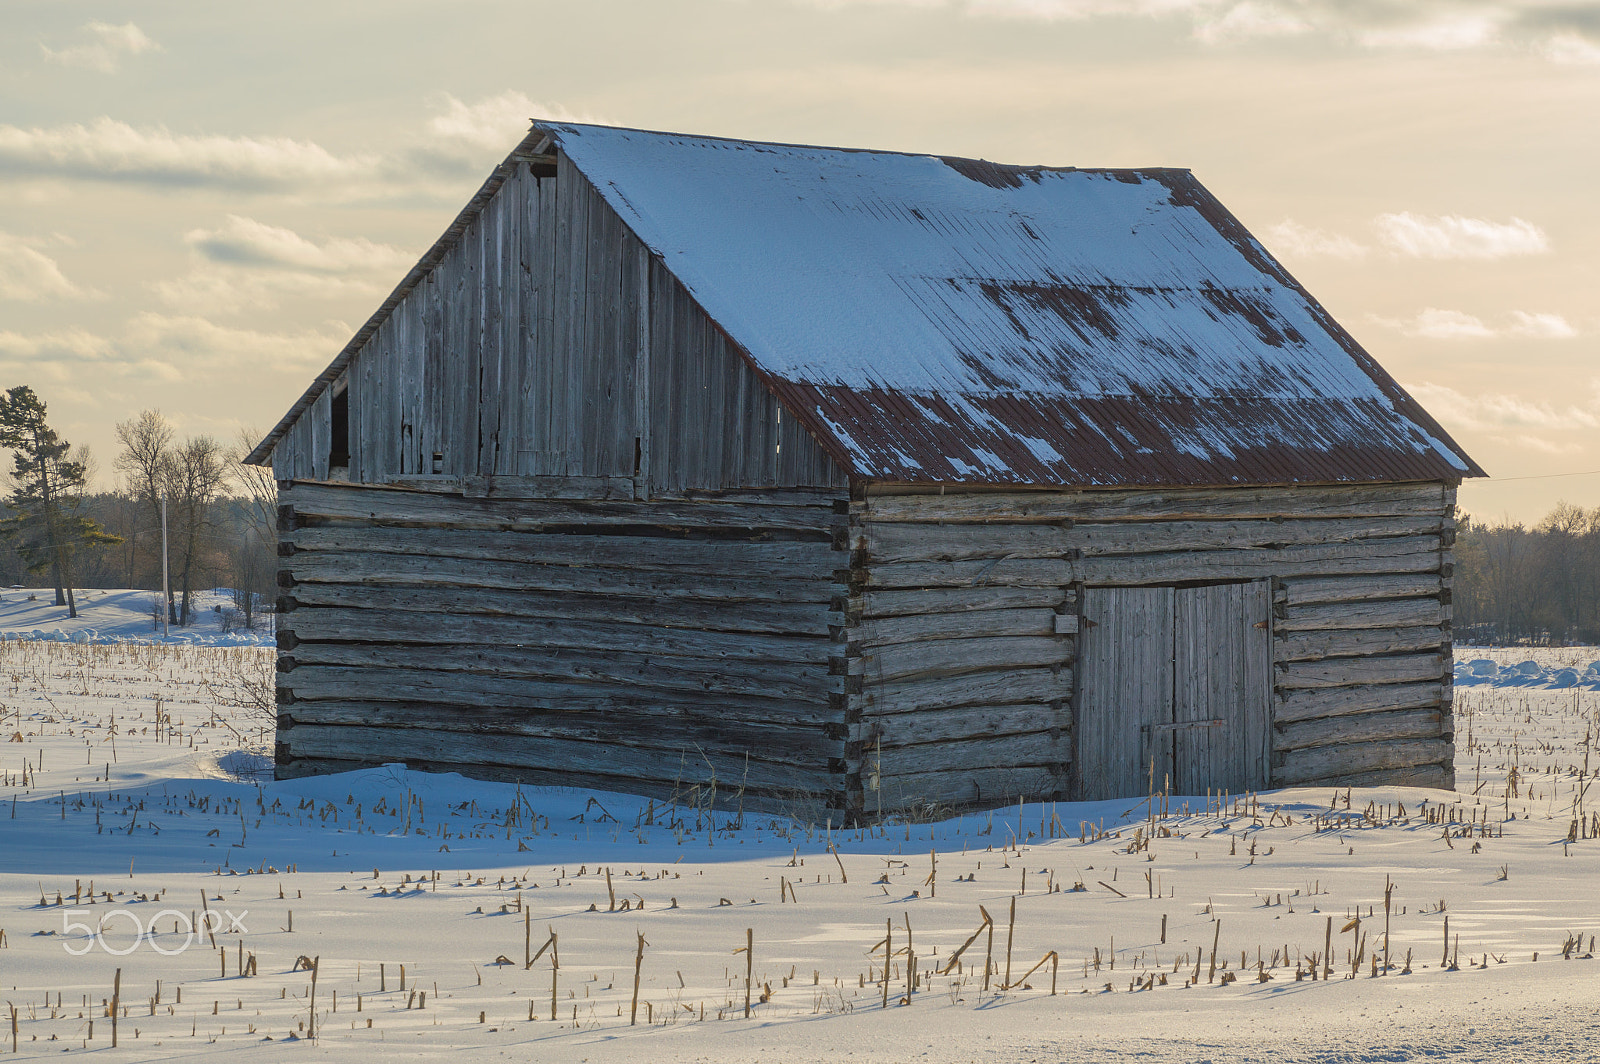 Nikon D3200 + Tamron 16-300mm F3.5-6.3 Di II VC PZD Macro sample photo. Pioneer log cabin barn in eastern ontario in winter photography